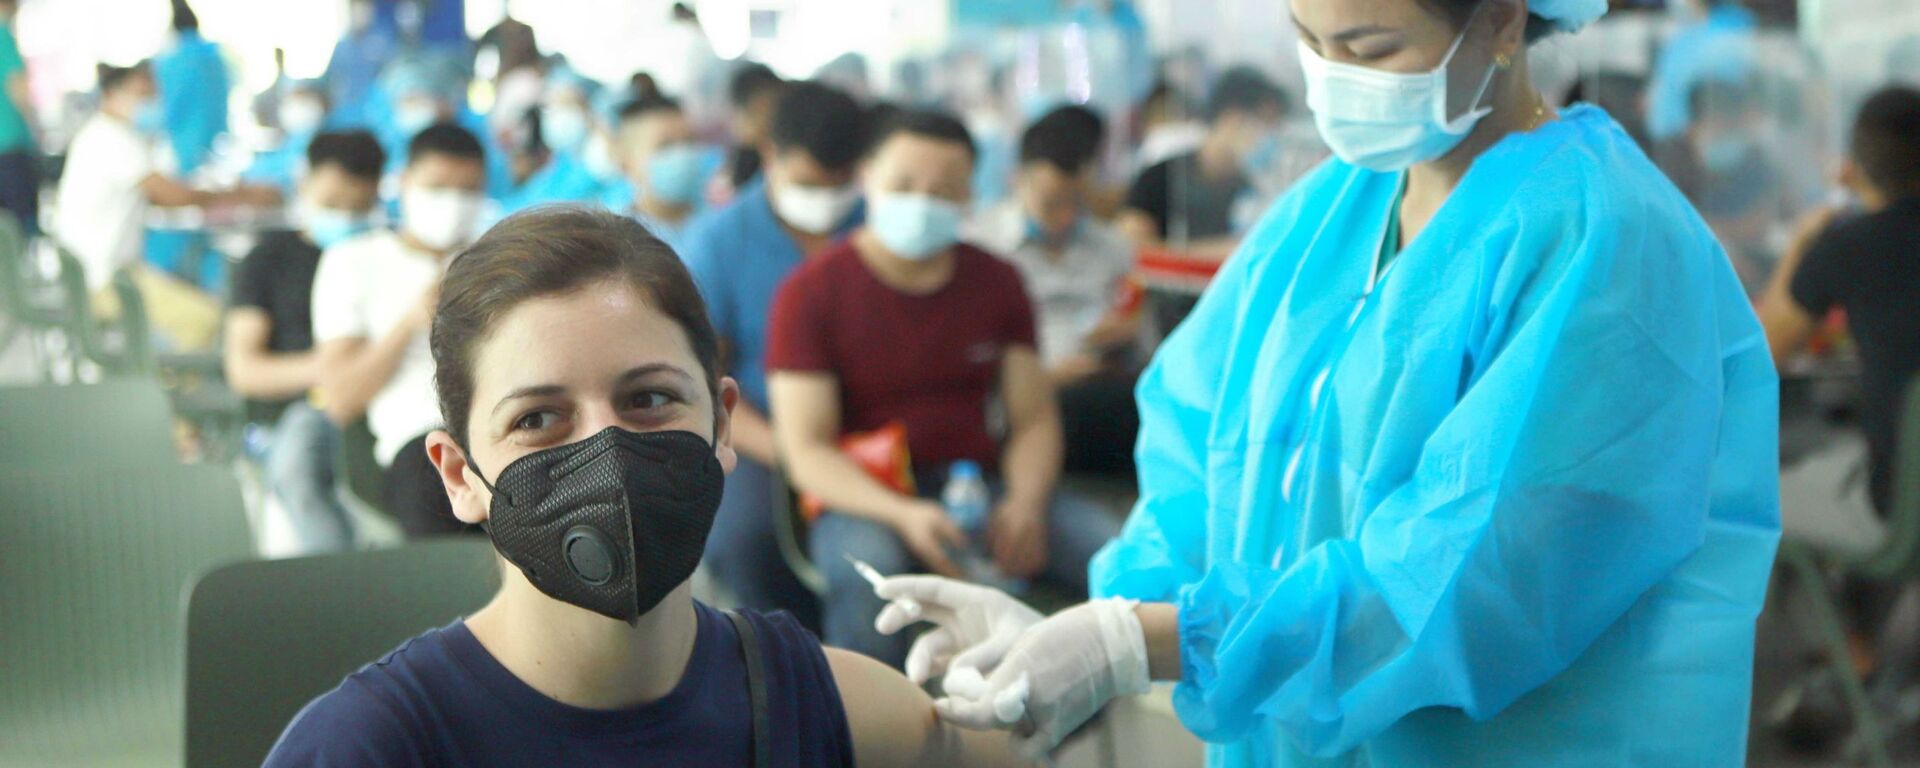 Vĩnh Phúc: 500 công nhân Công ty Piaggio Việt Nam được tiêm vaccine phòng COVID-19 - Sputnik Việt Nam, 1920, 21.07.2021